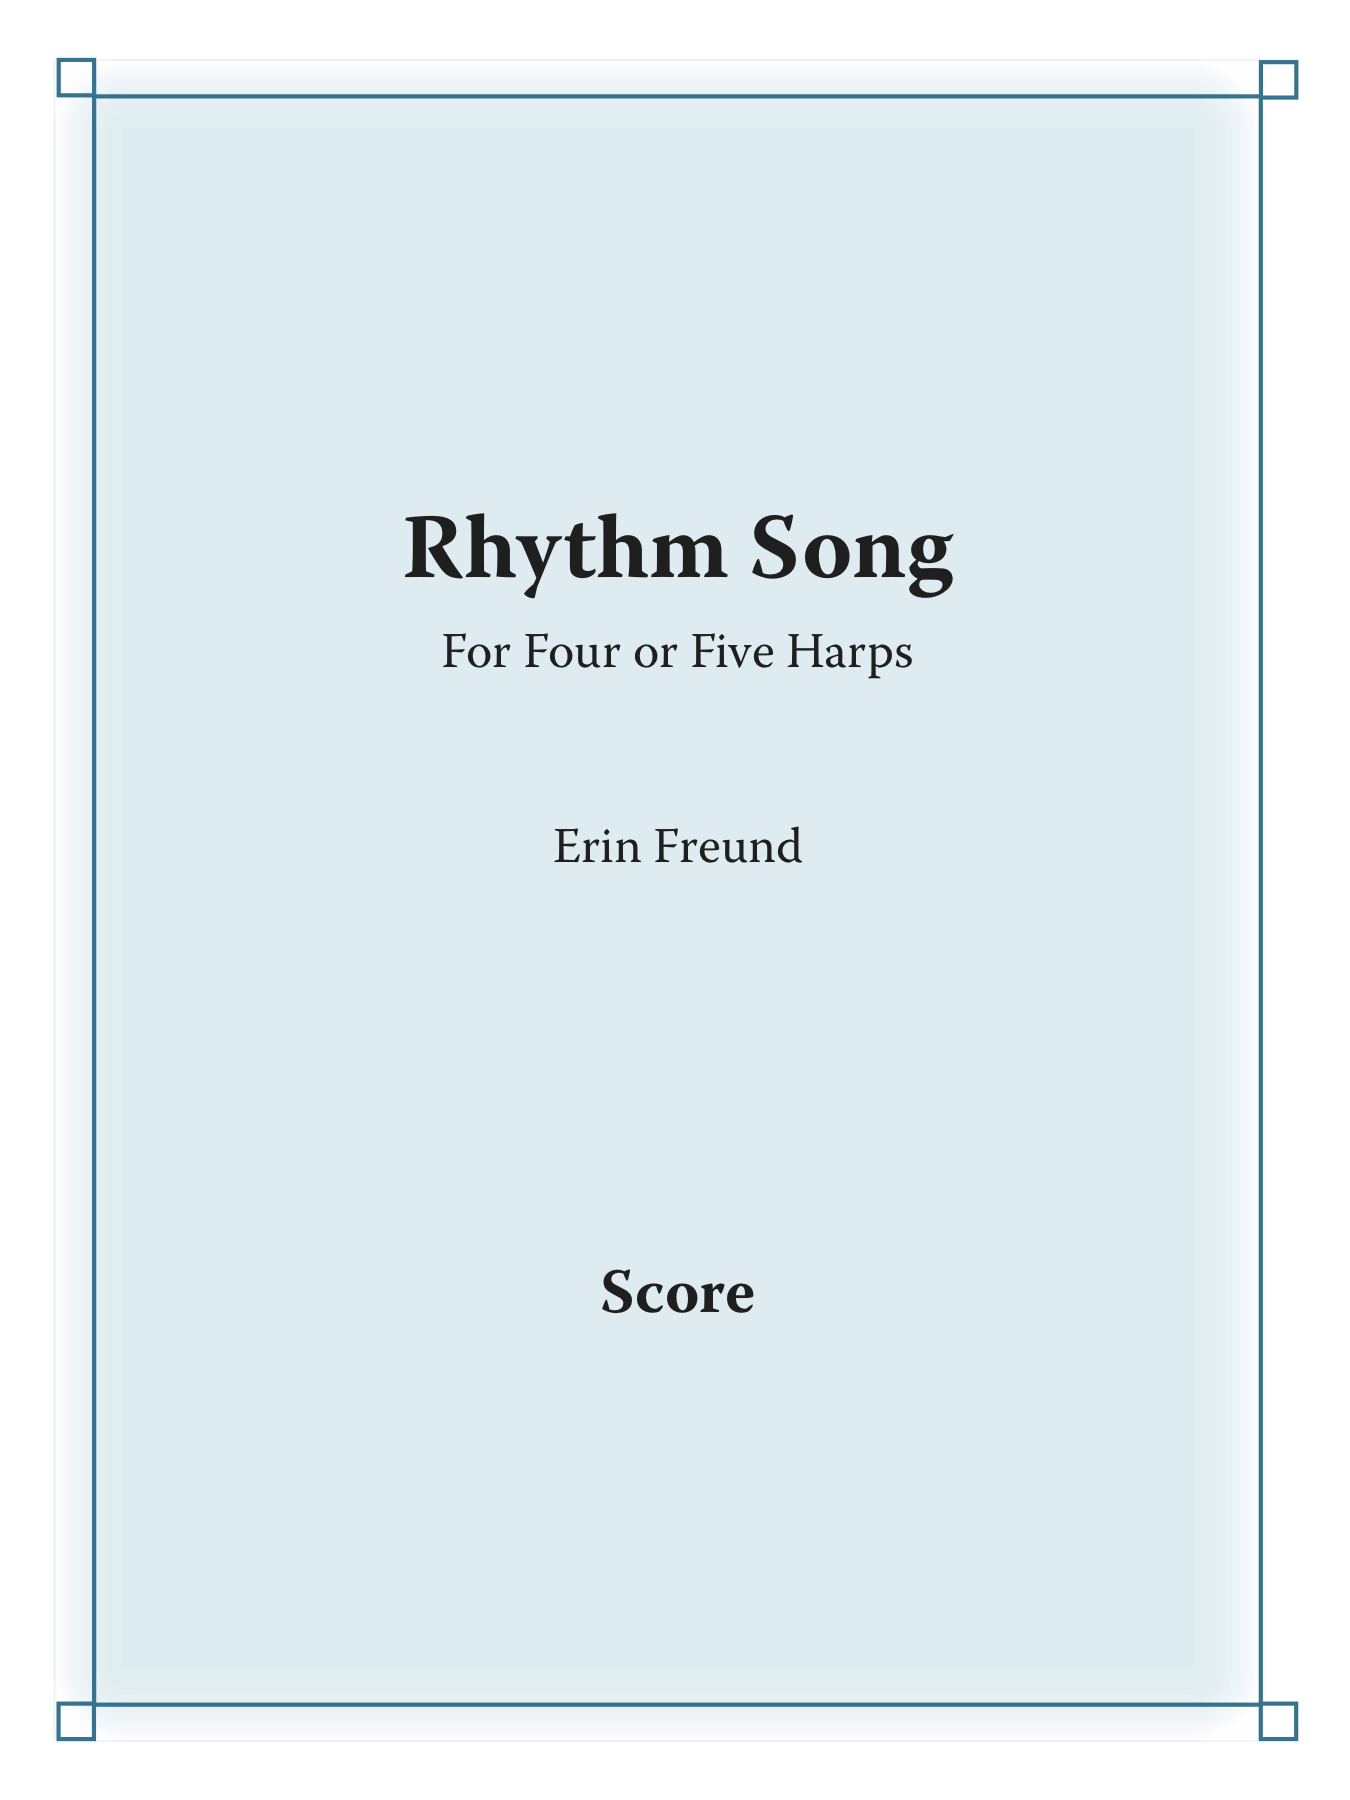 Rhythm song score cover.jpg